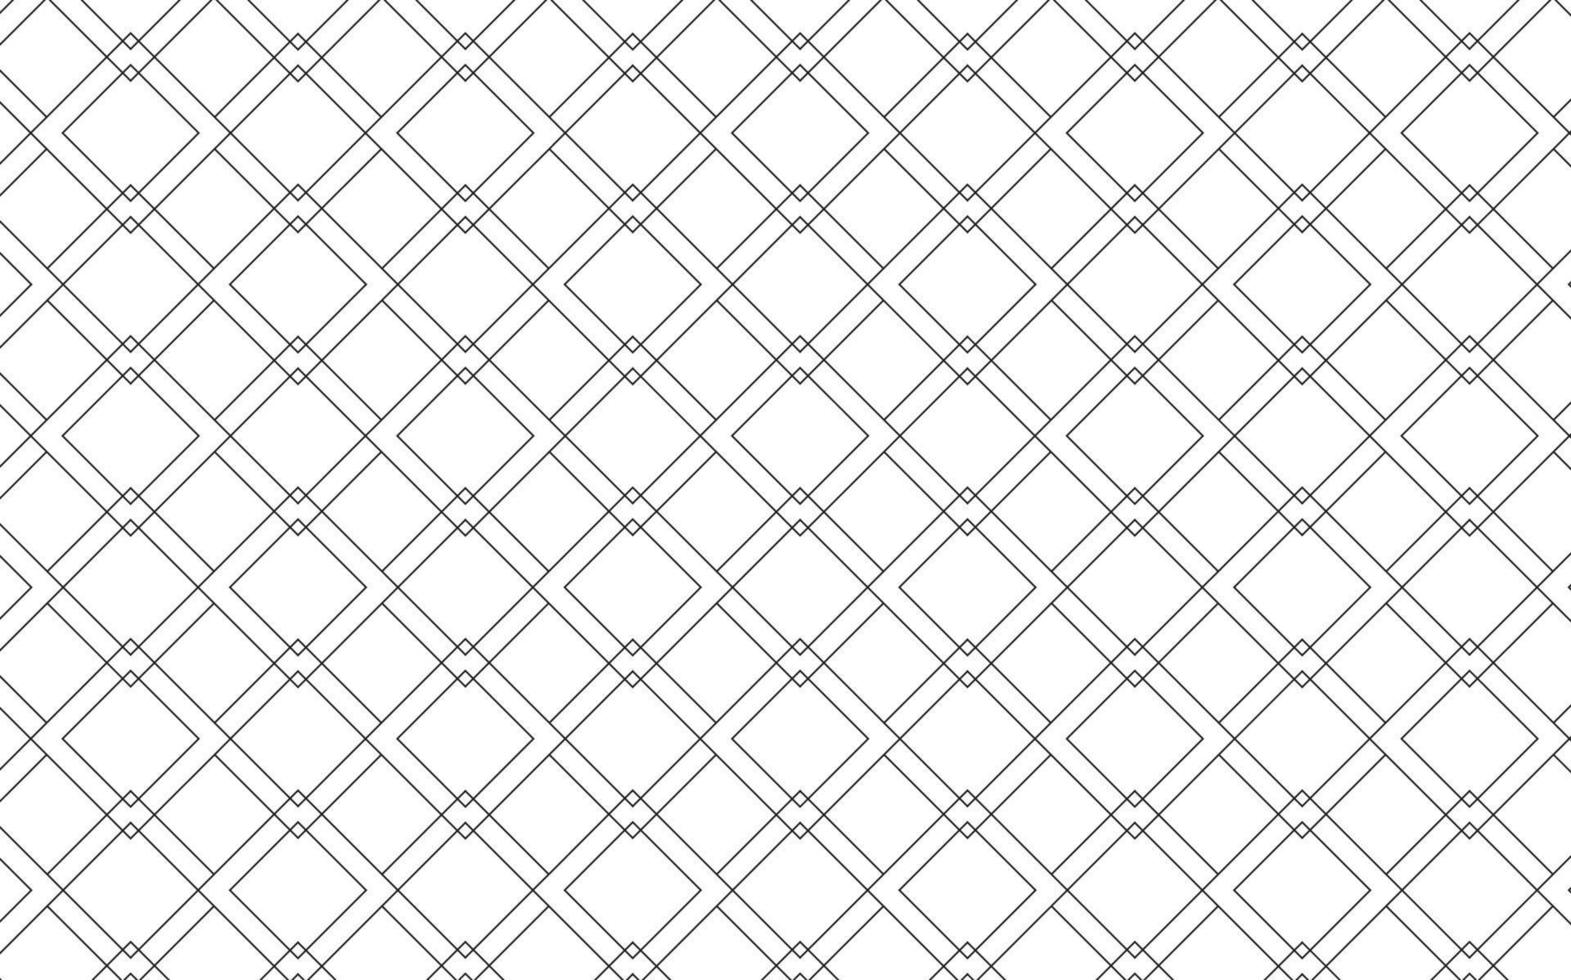 patrón de vectores abstractos. diseño de textura de fondo. diseño de patrón hermoso y simple.